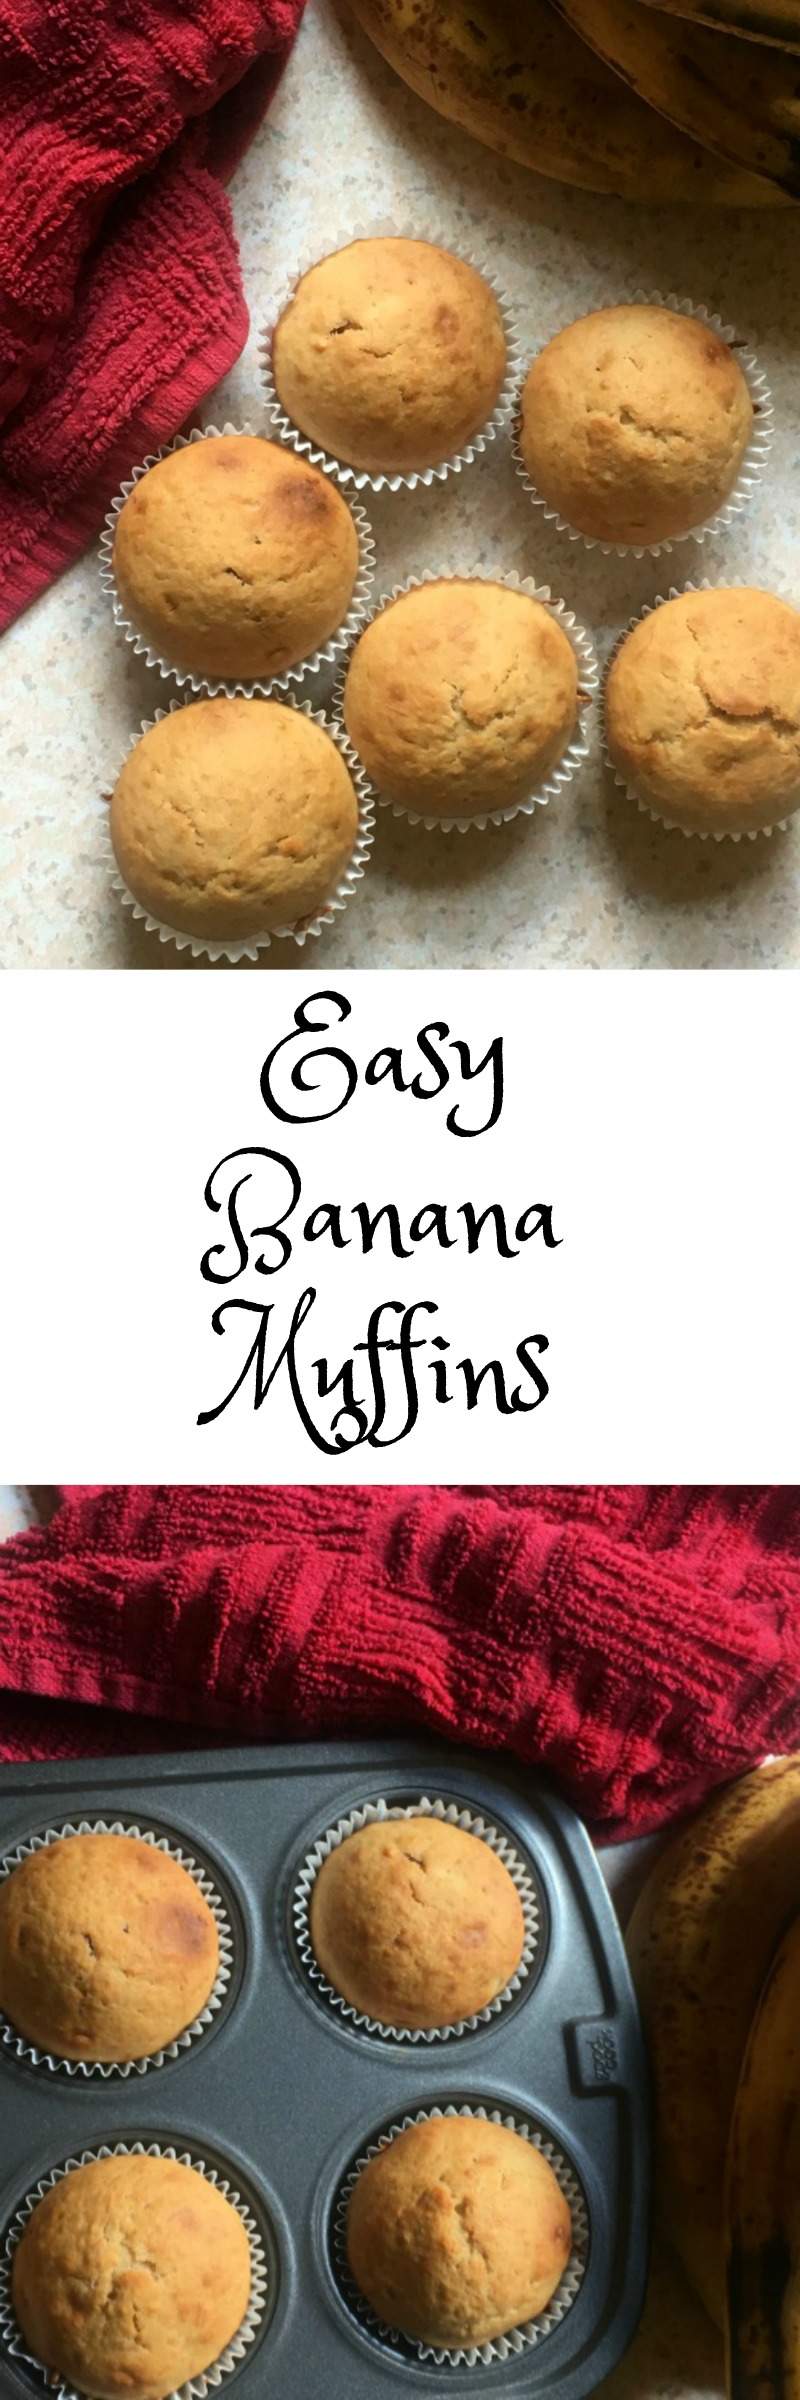 Easy Banana Muffins Recipe